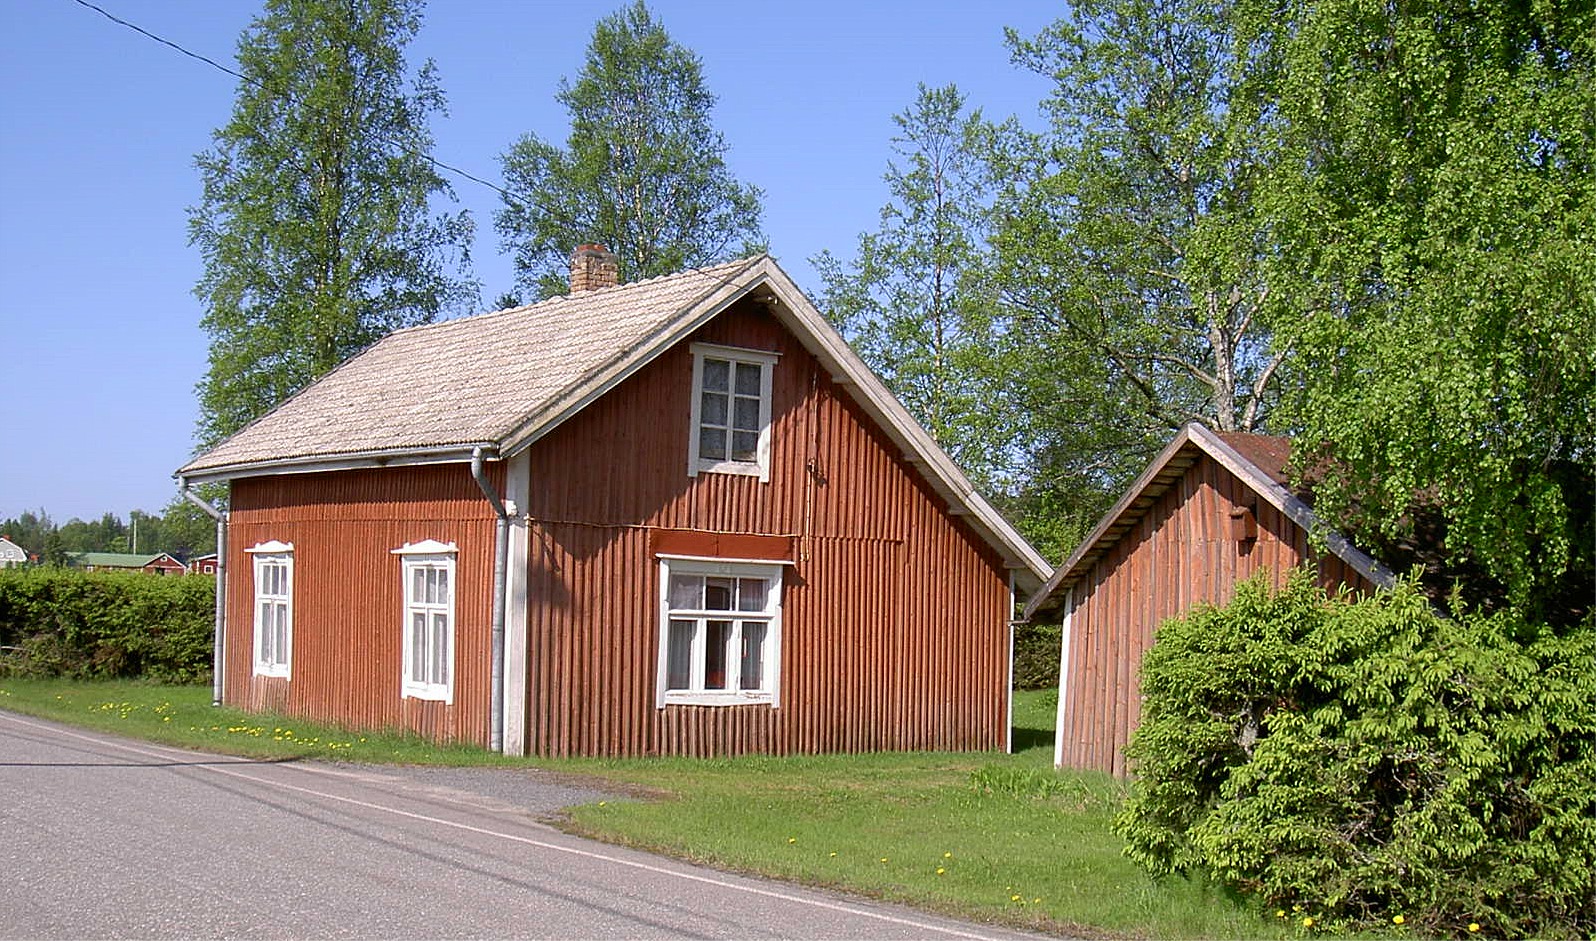 Den här stugan nära Åbackvägen byggdes på 1930-talet av skräddaren Johannes Klemets (1889-1944) och hustrun Matilda (f. Björklund i Lappfjärd 1892-1975). 